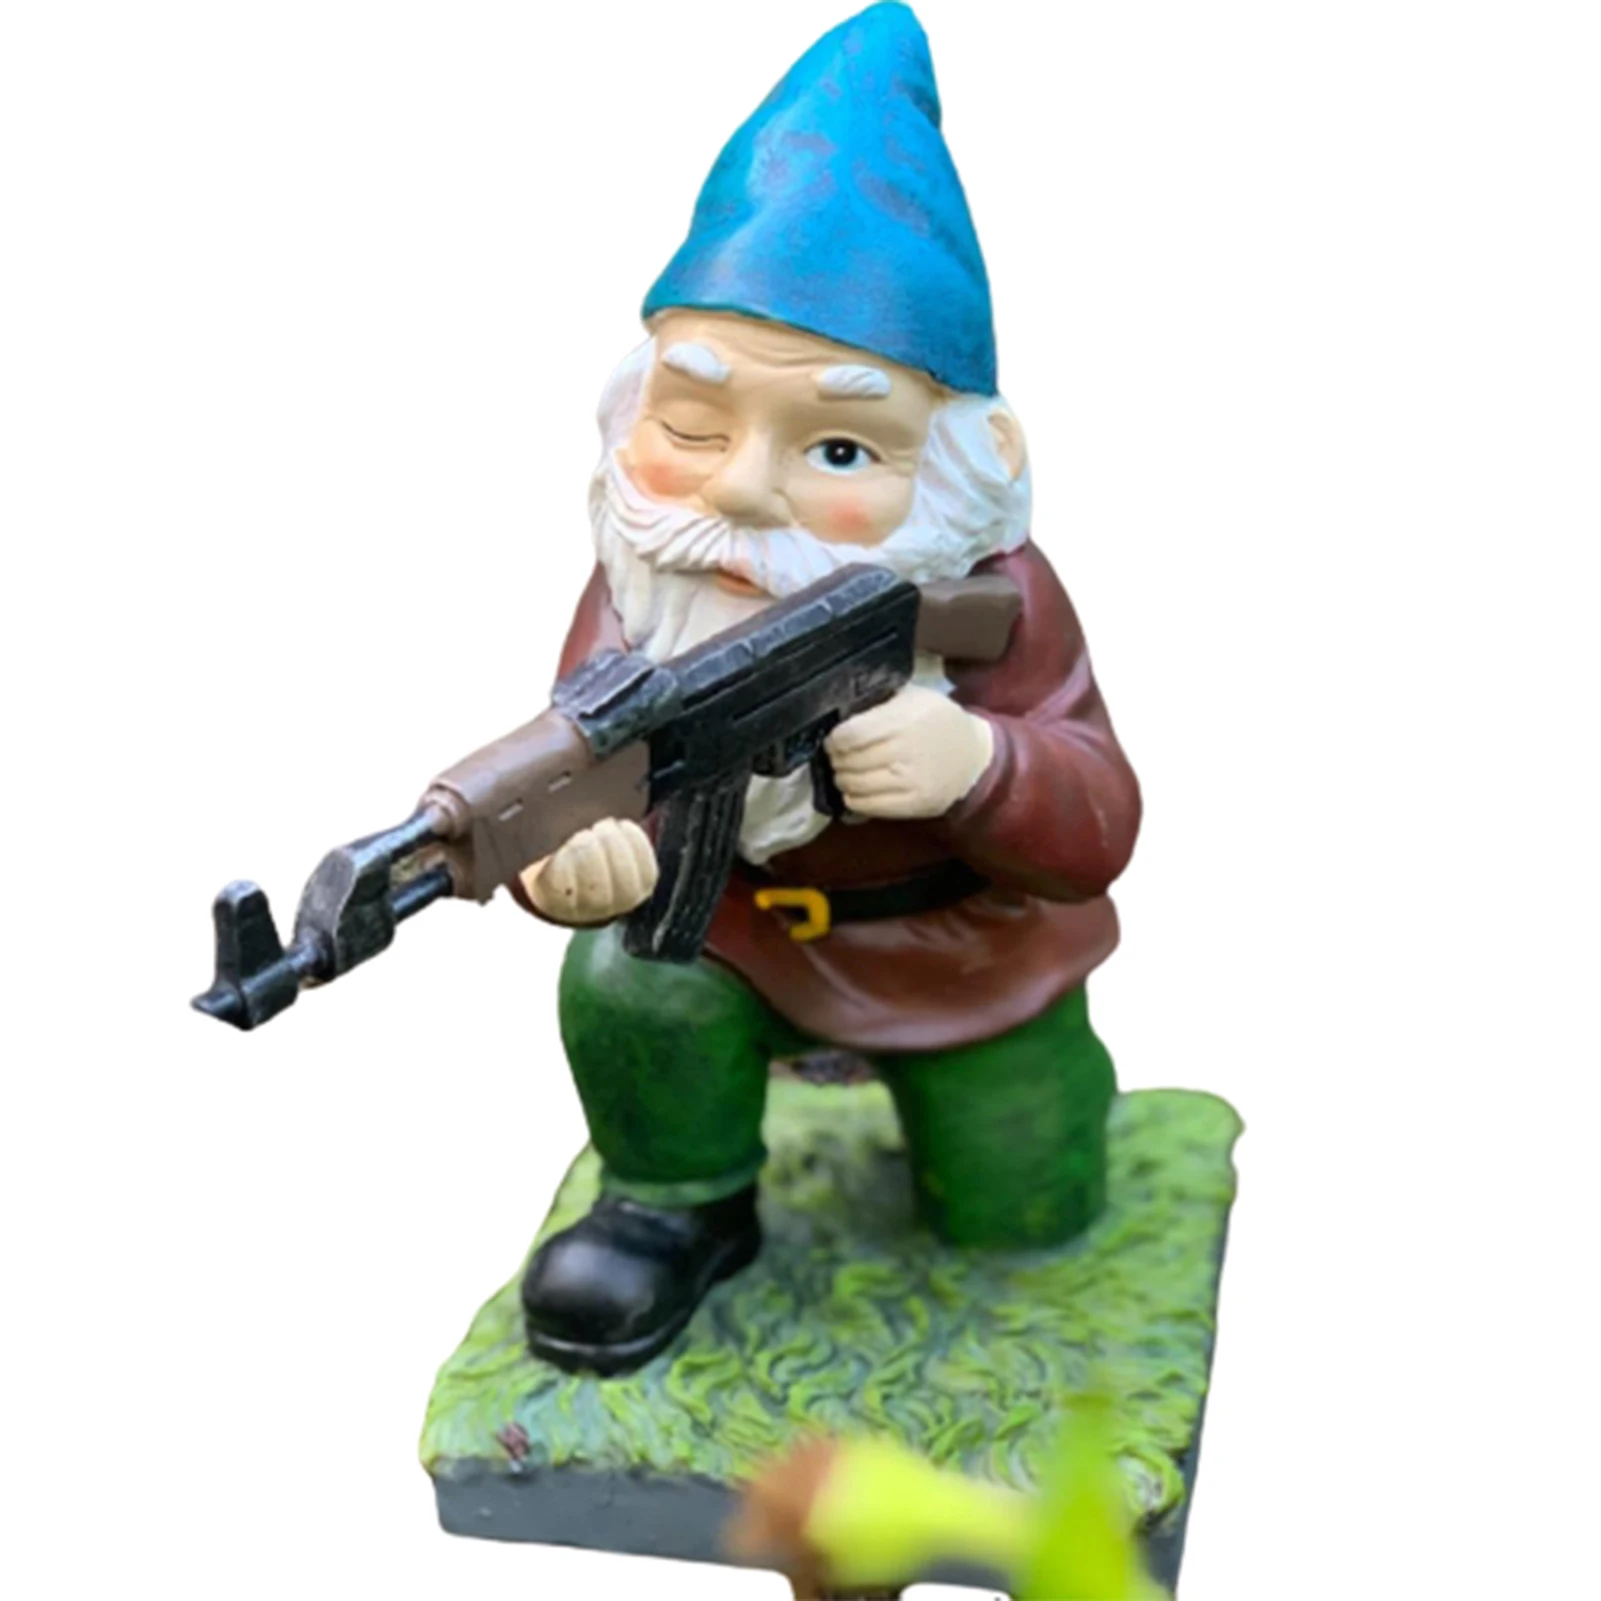 Funny Army Garden Gnome Statue Resin Home Lawn Ornament Figure Sculpture Decor 